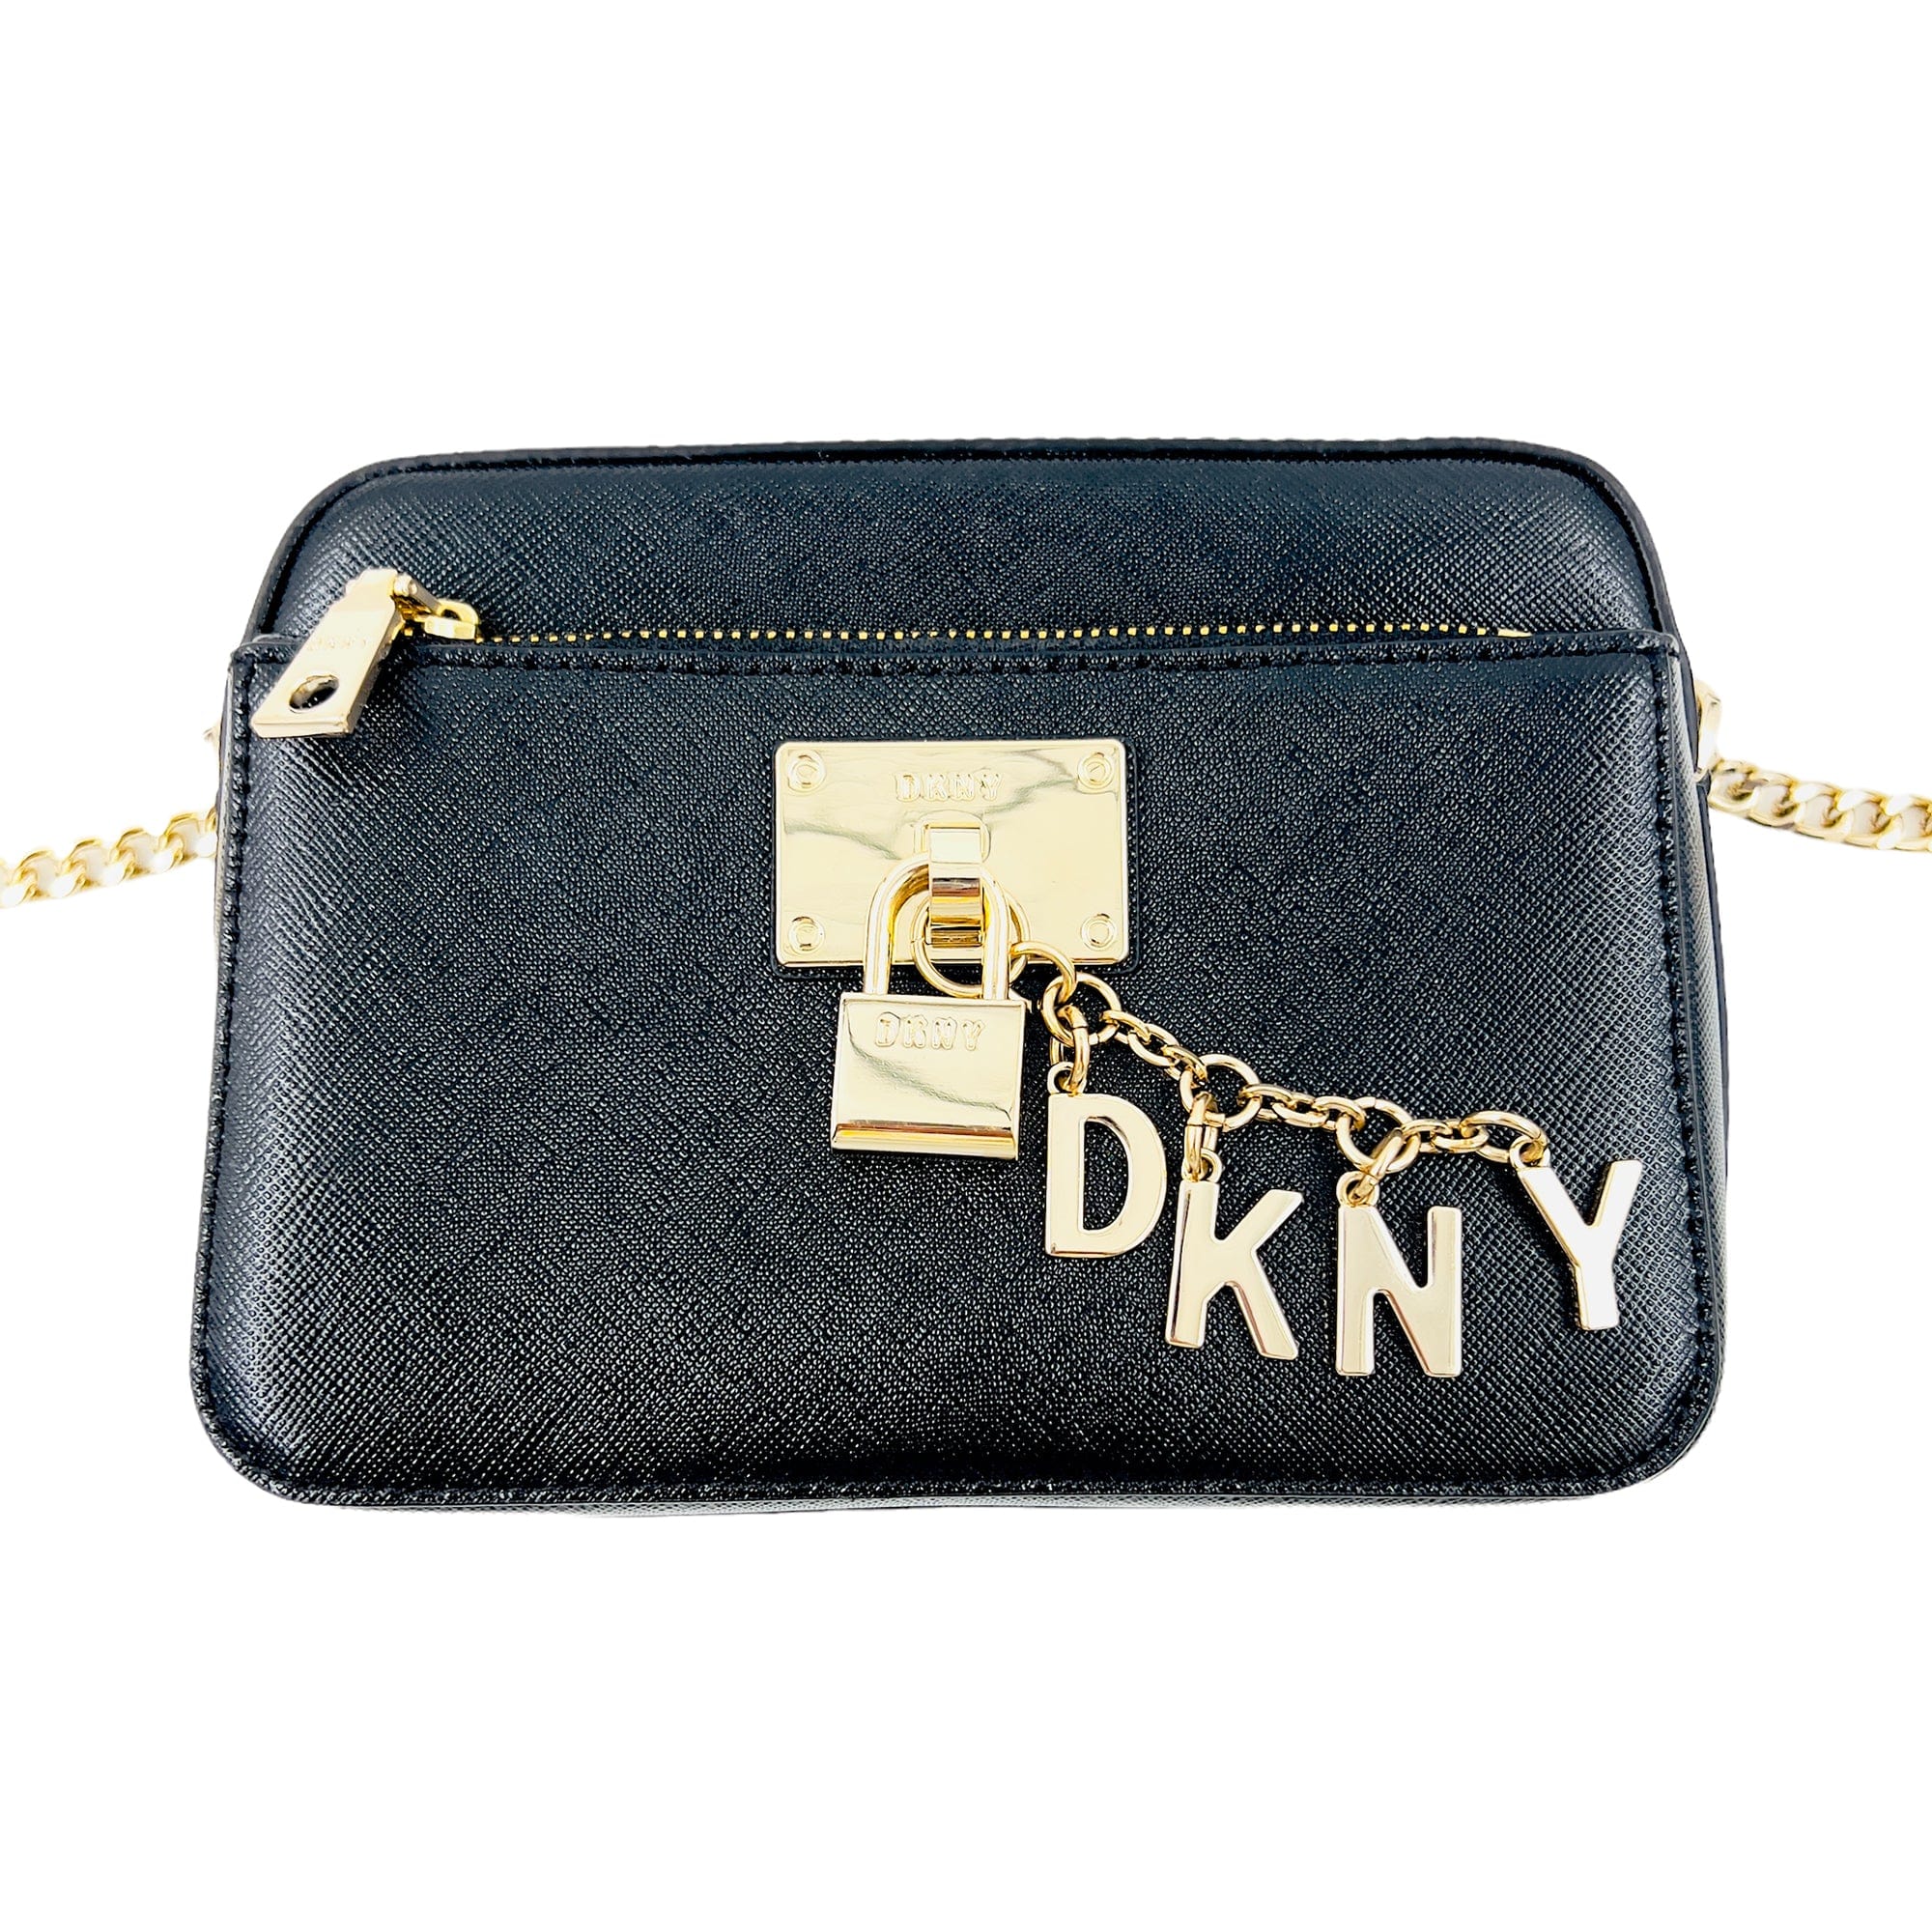 DKNY Handbags, Cross Body Bags